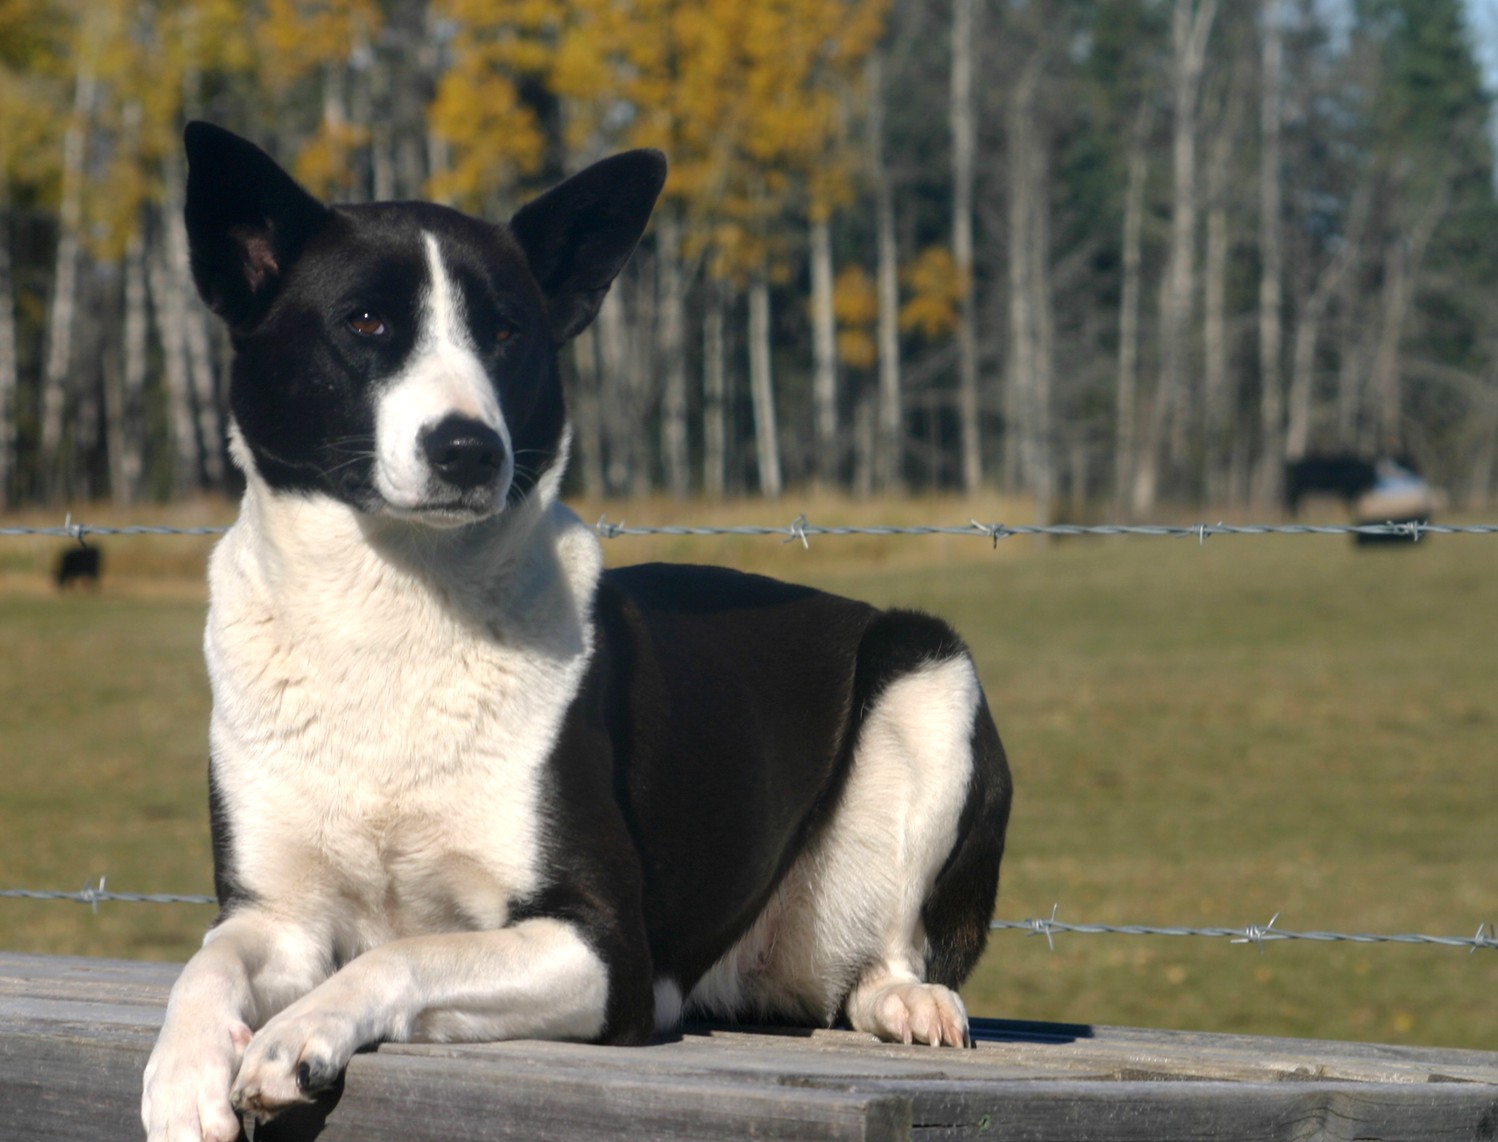 Ханаанская собака — внимательный охранник и преданный друг